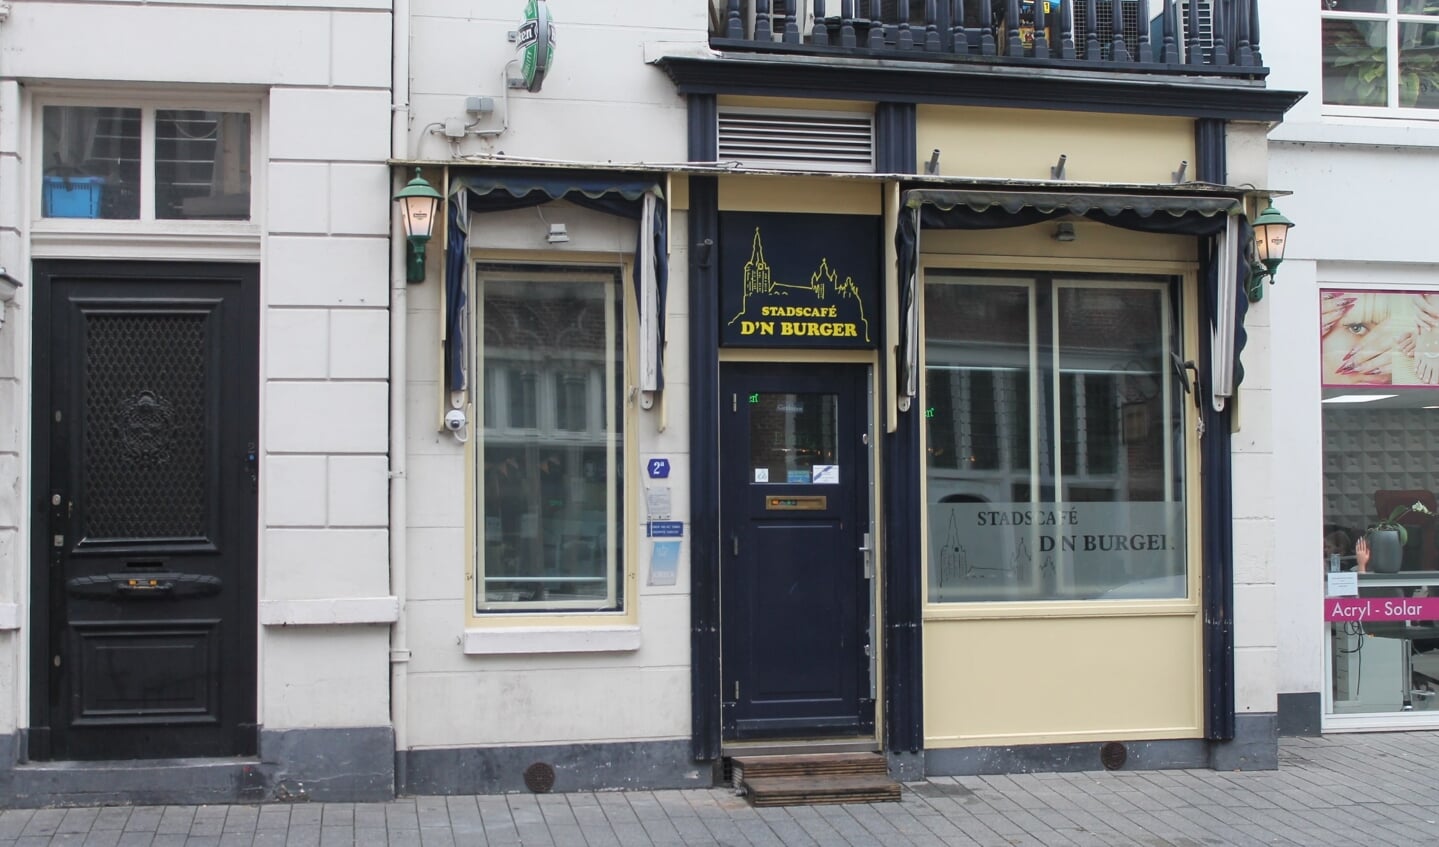 Stads- en borrelcafé D’n Burger is gevestigd aan de Orthenstraat 2a in Den Bosch.